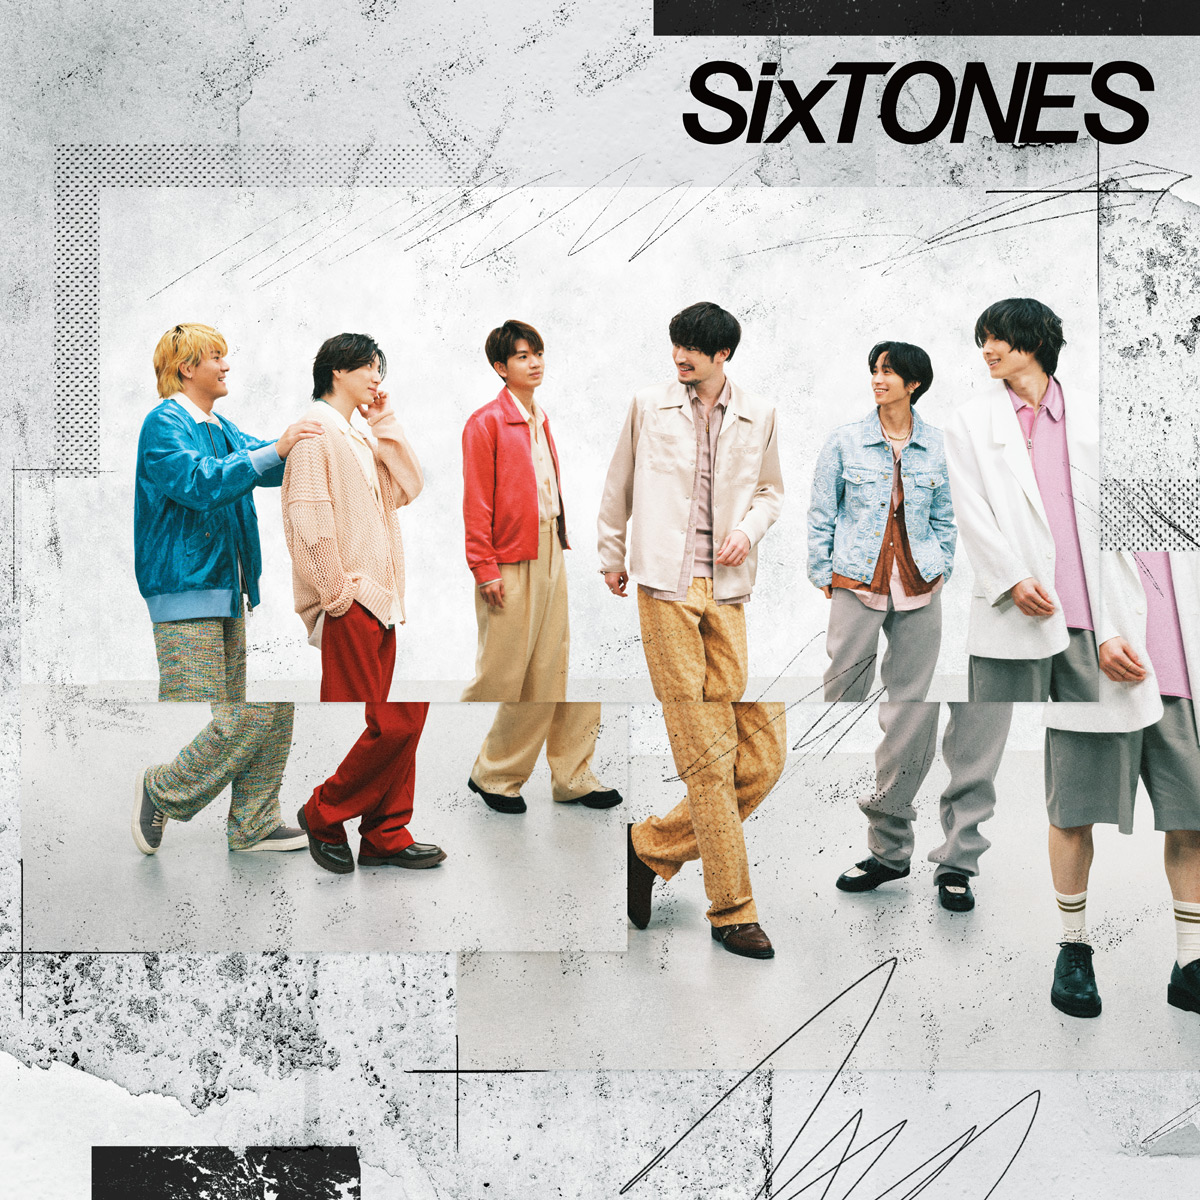 SixTONES、新曲「音色」が初週売り上げ52万3000枚で11作連続初登場1位!